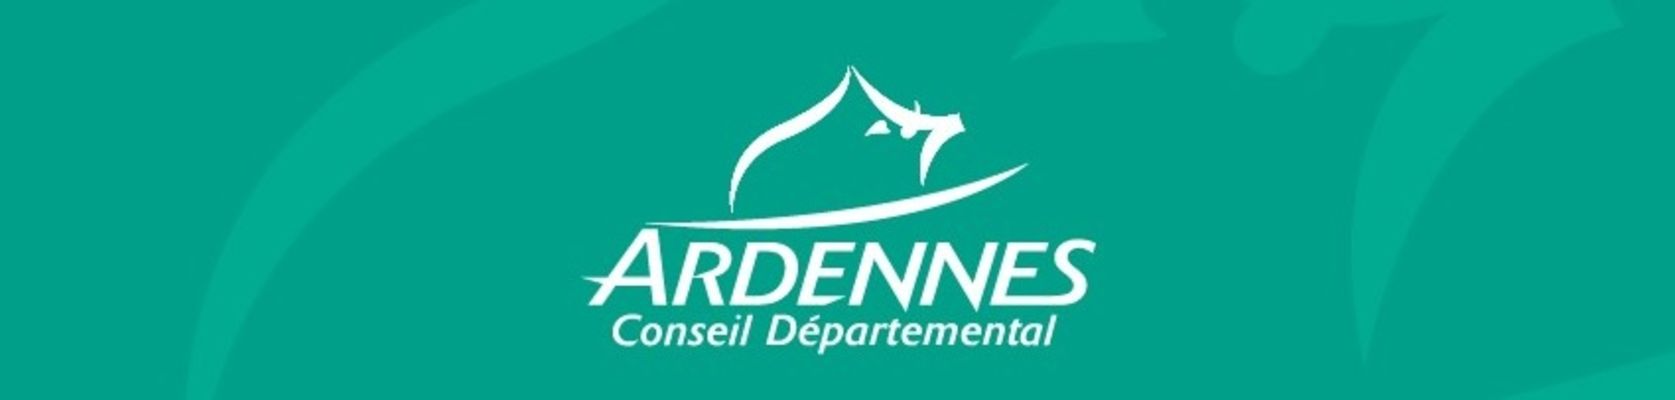 CONSEIL DEPARTEMENTAL DES ARDENNES